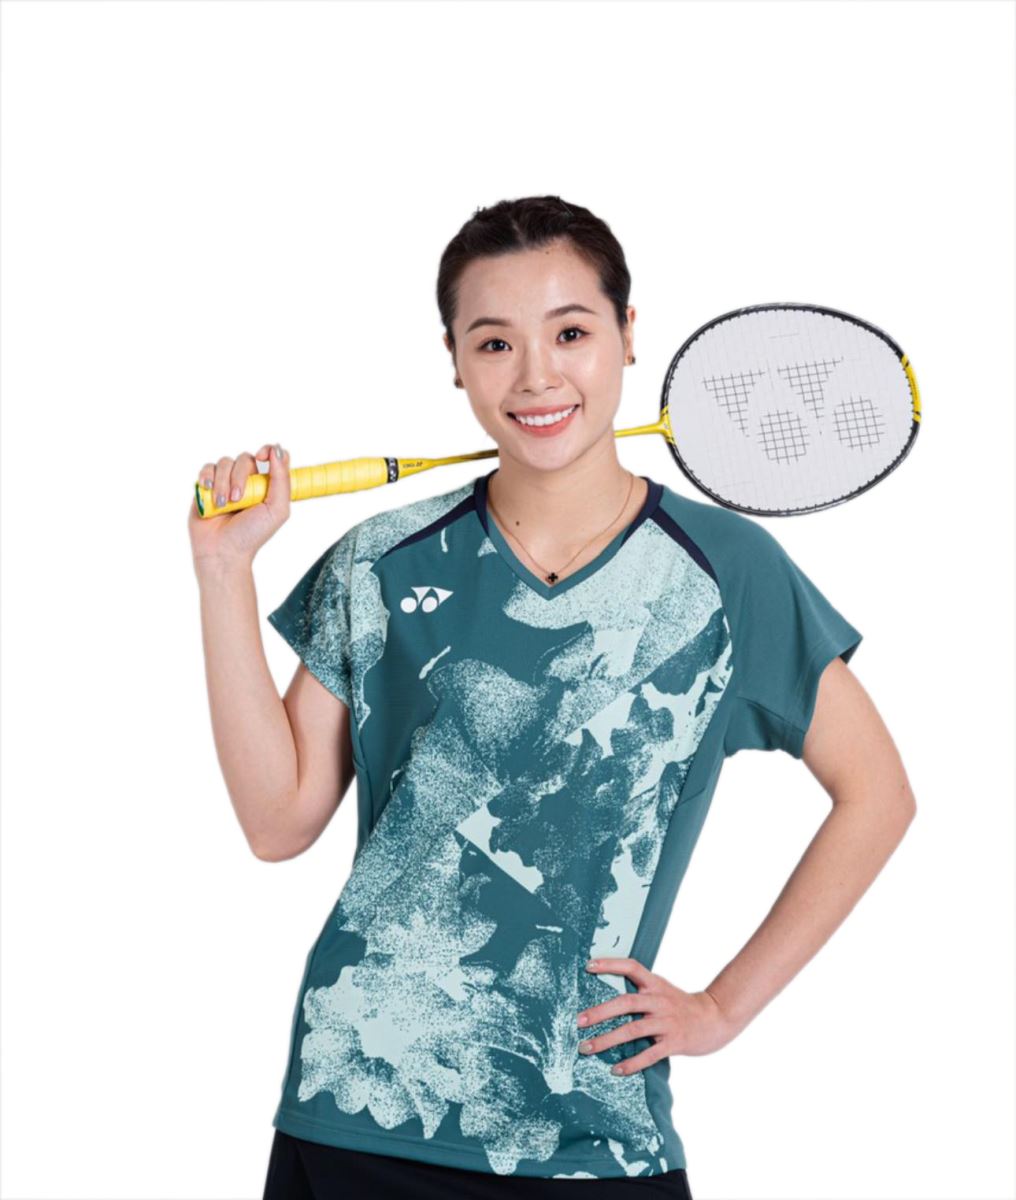 Thuỳ Linh (sinh năm 1997) là tay vợt nữ xuất sắc nhất của cầu lông Việt Nam ở thời điểm hiện tại.